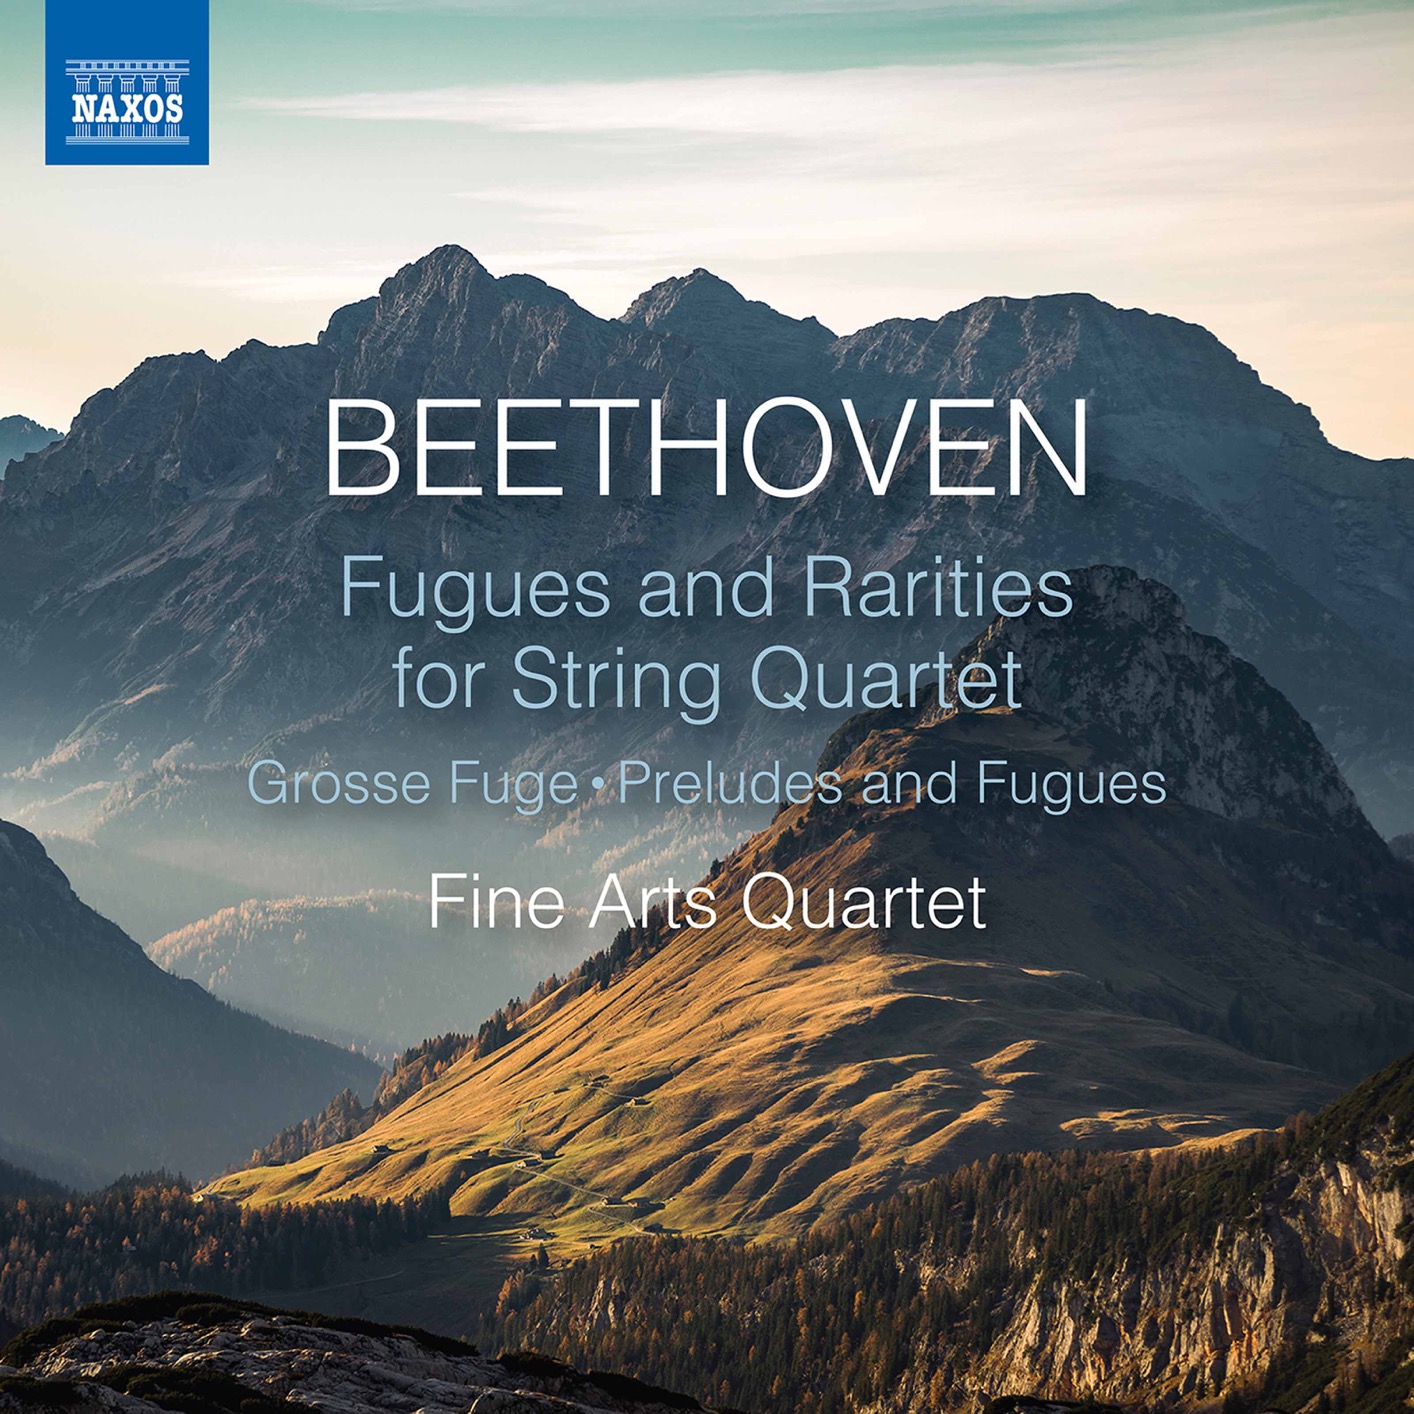 Fine Arts Quartet - Beethoven: Works for String Quartet (2020) [FLAC 24bit/96kHz]